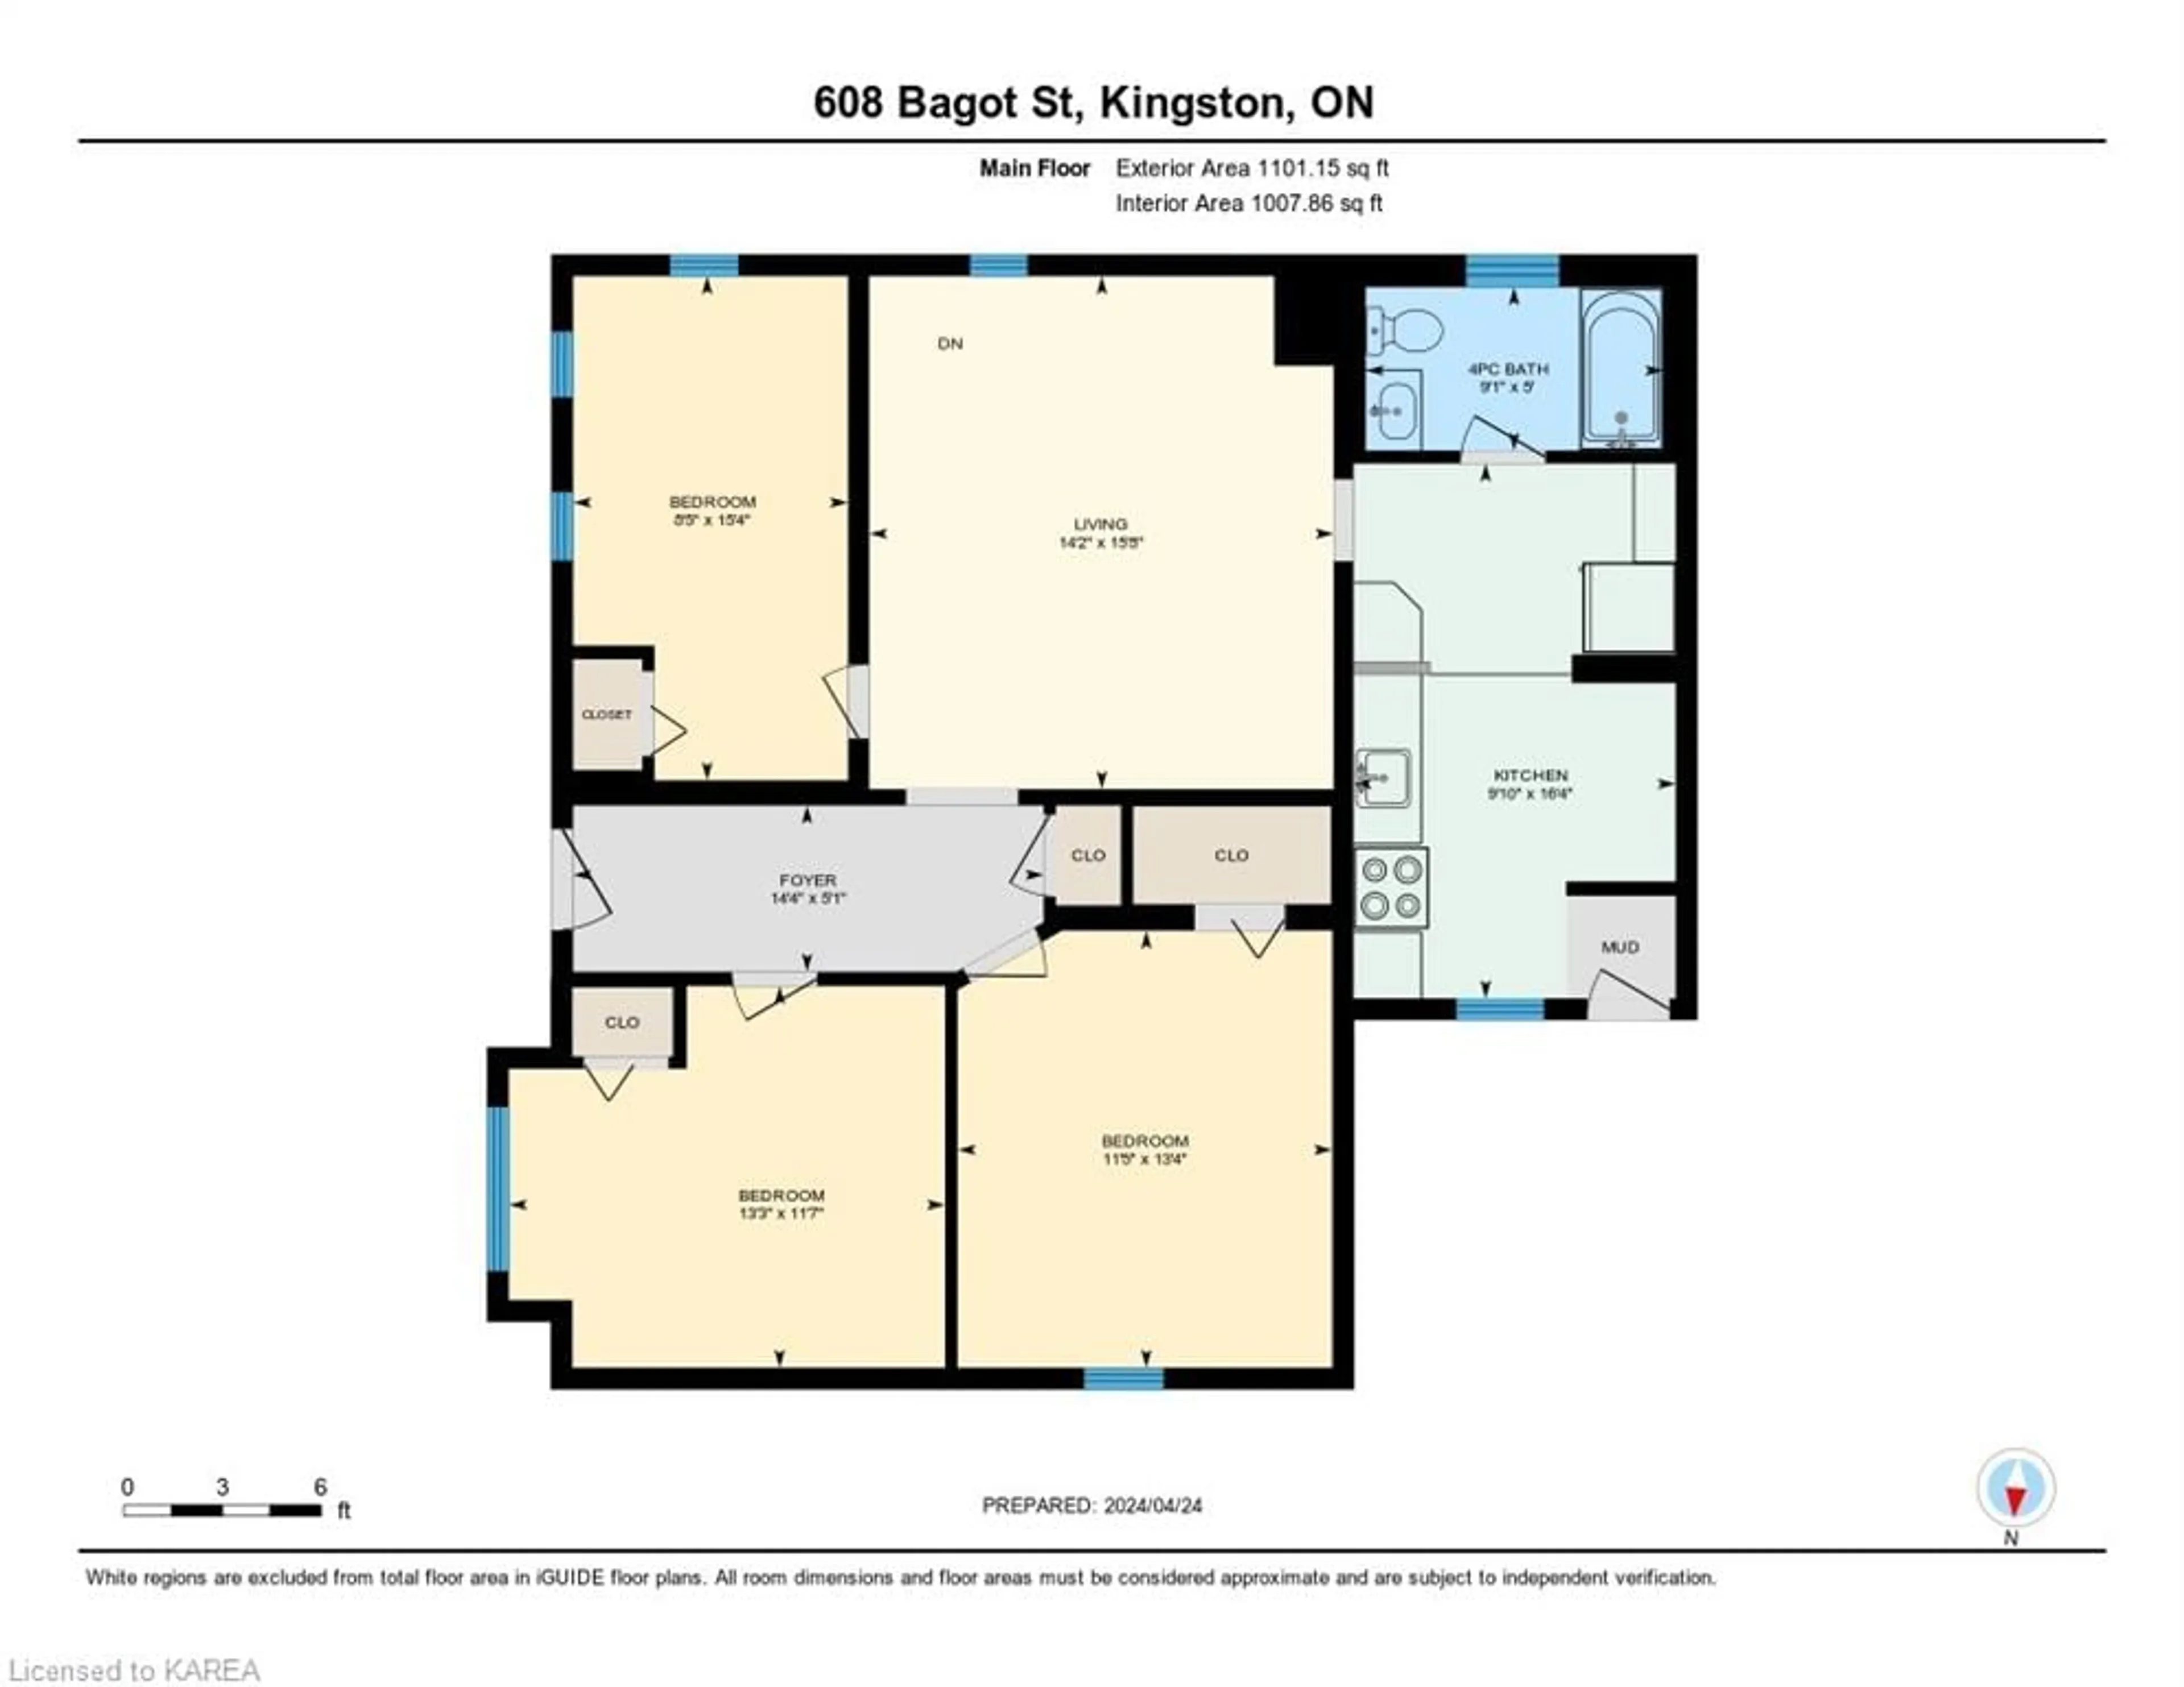 Floor plan for 608 Bagot St, Kingston Ontario K7K 3E5